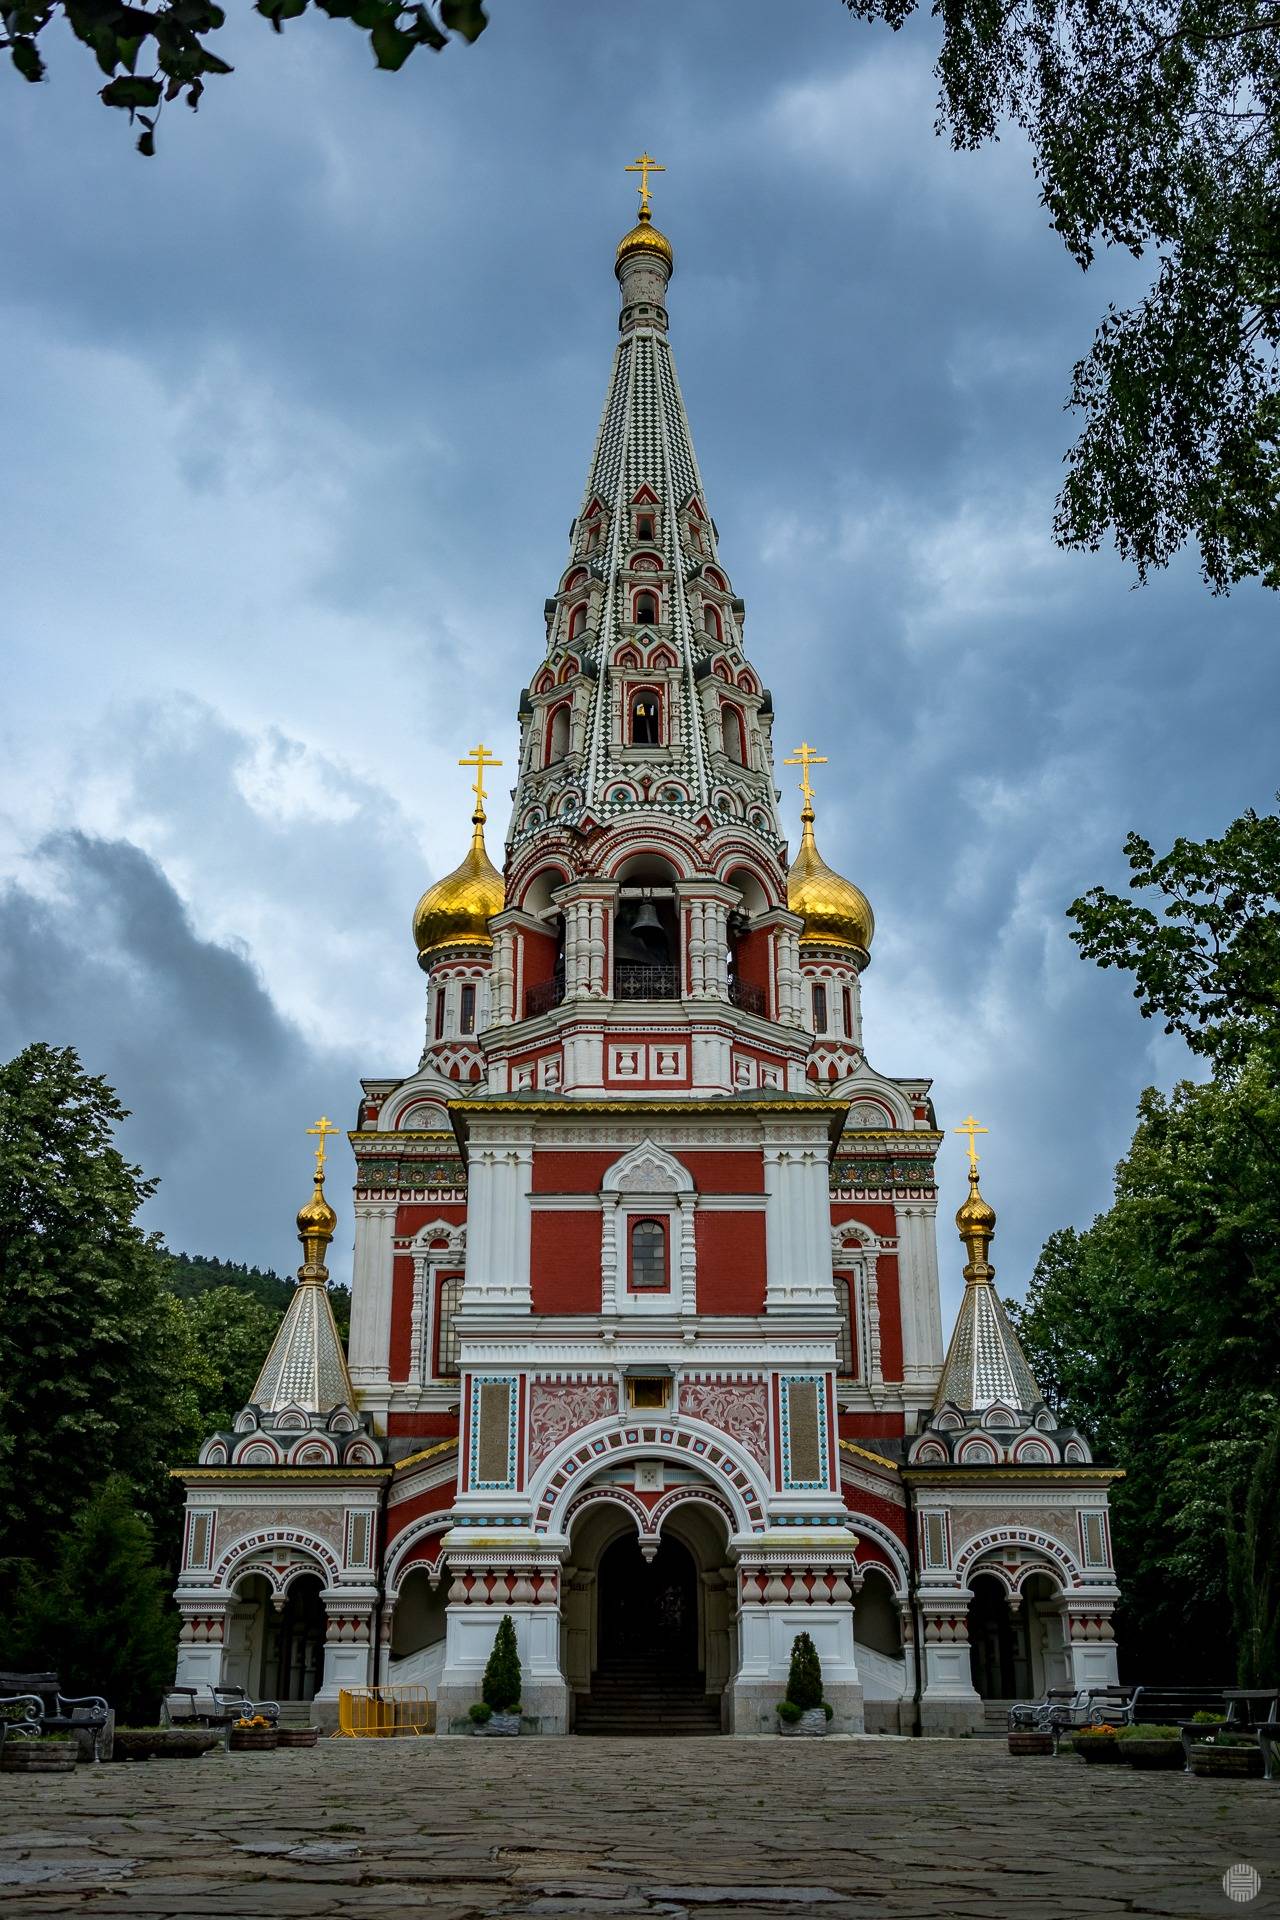 Shipka Memorial Church - Places in Bulgaria (18 photos)